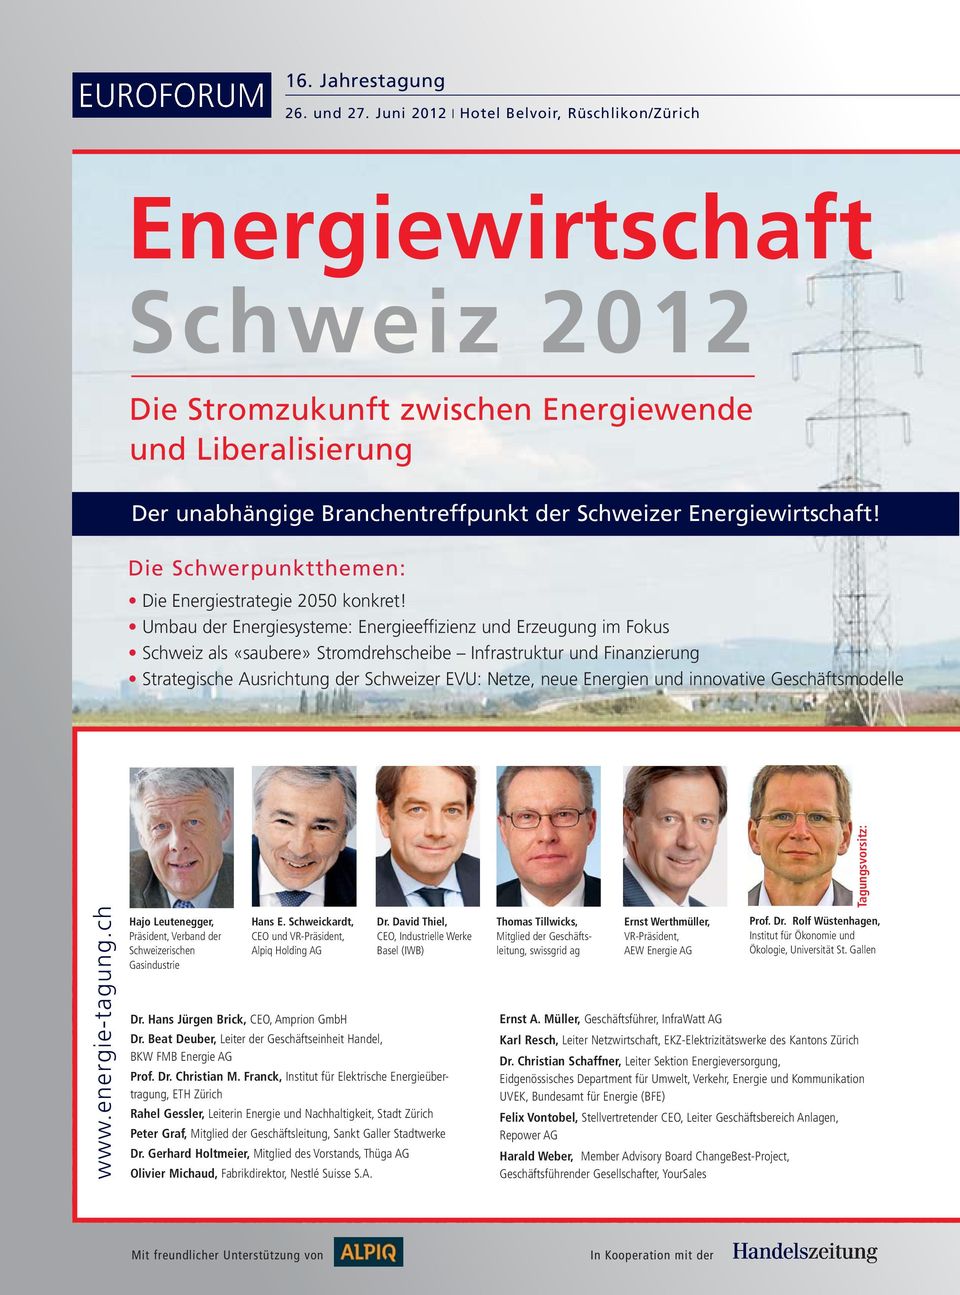 Die Schwerpunktthemen: Die Energiestrategie 2050 konkret!